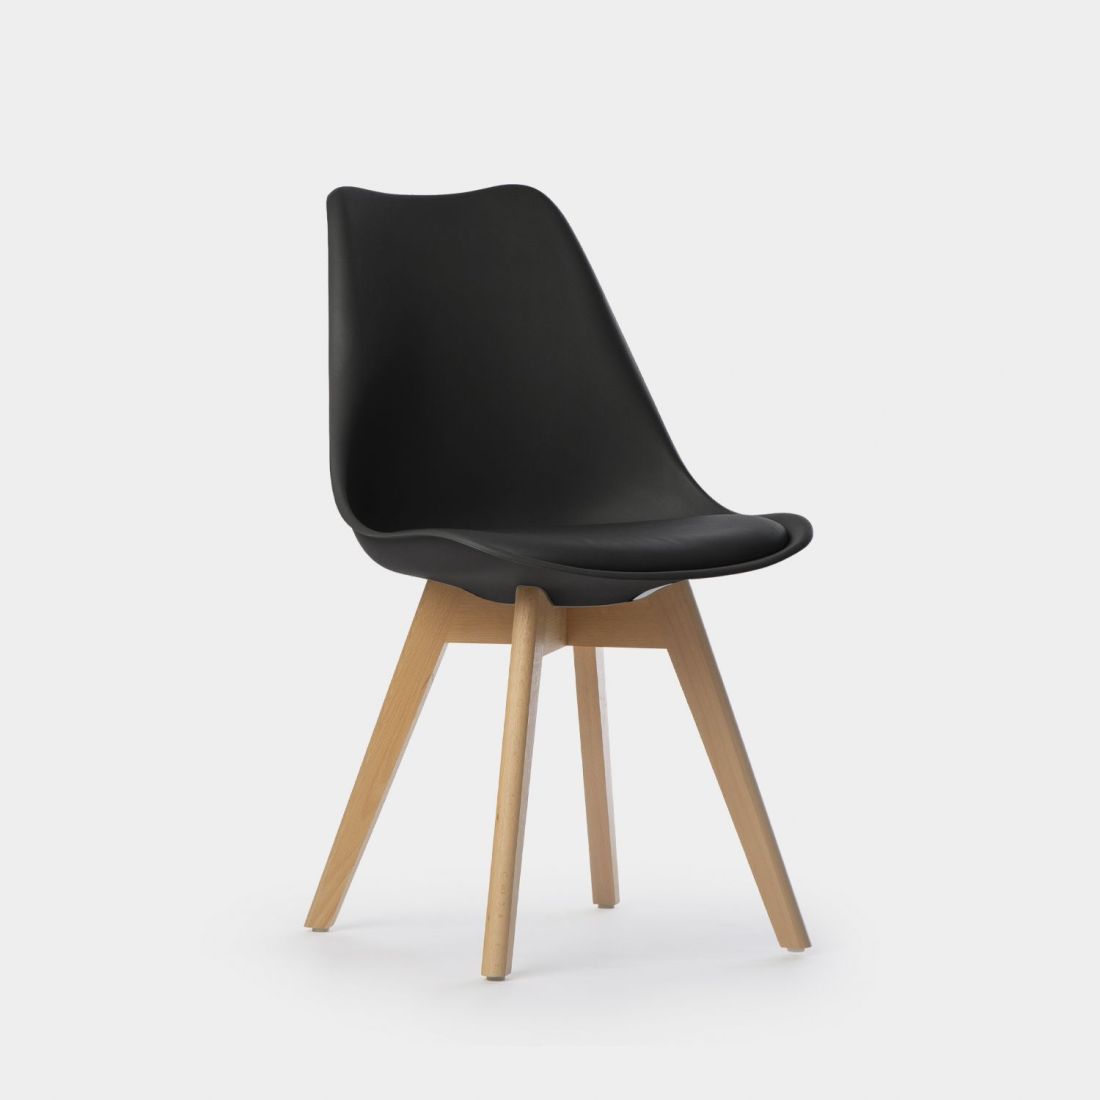 La silla de comedor en polipropileno Kler es una de esas sillas que combina a la perfección un diseño elegante y refinado con funcionalidad